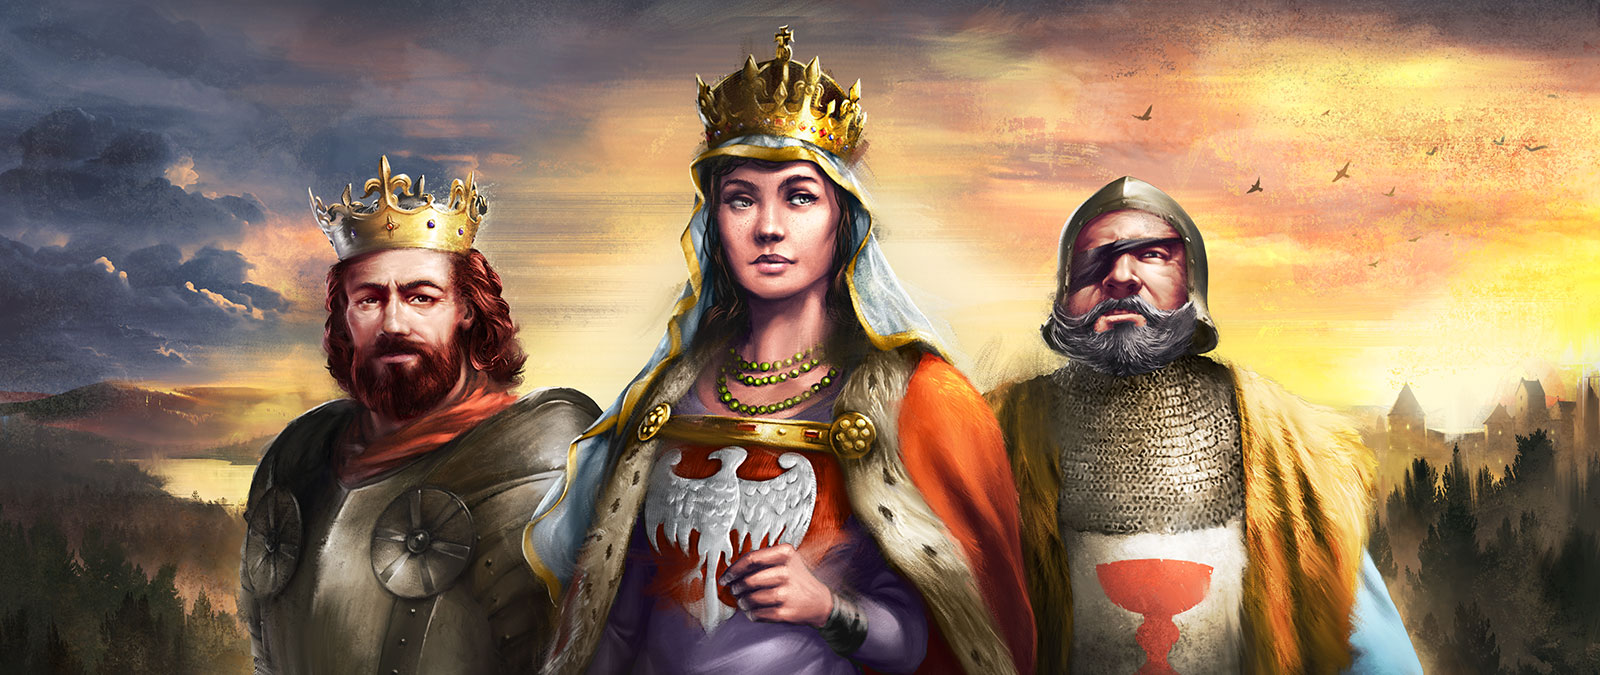 王室の衣装を身にまとった欧州の 3 人のキャラクター。